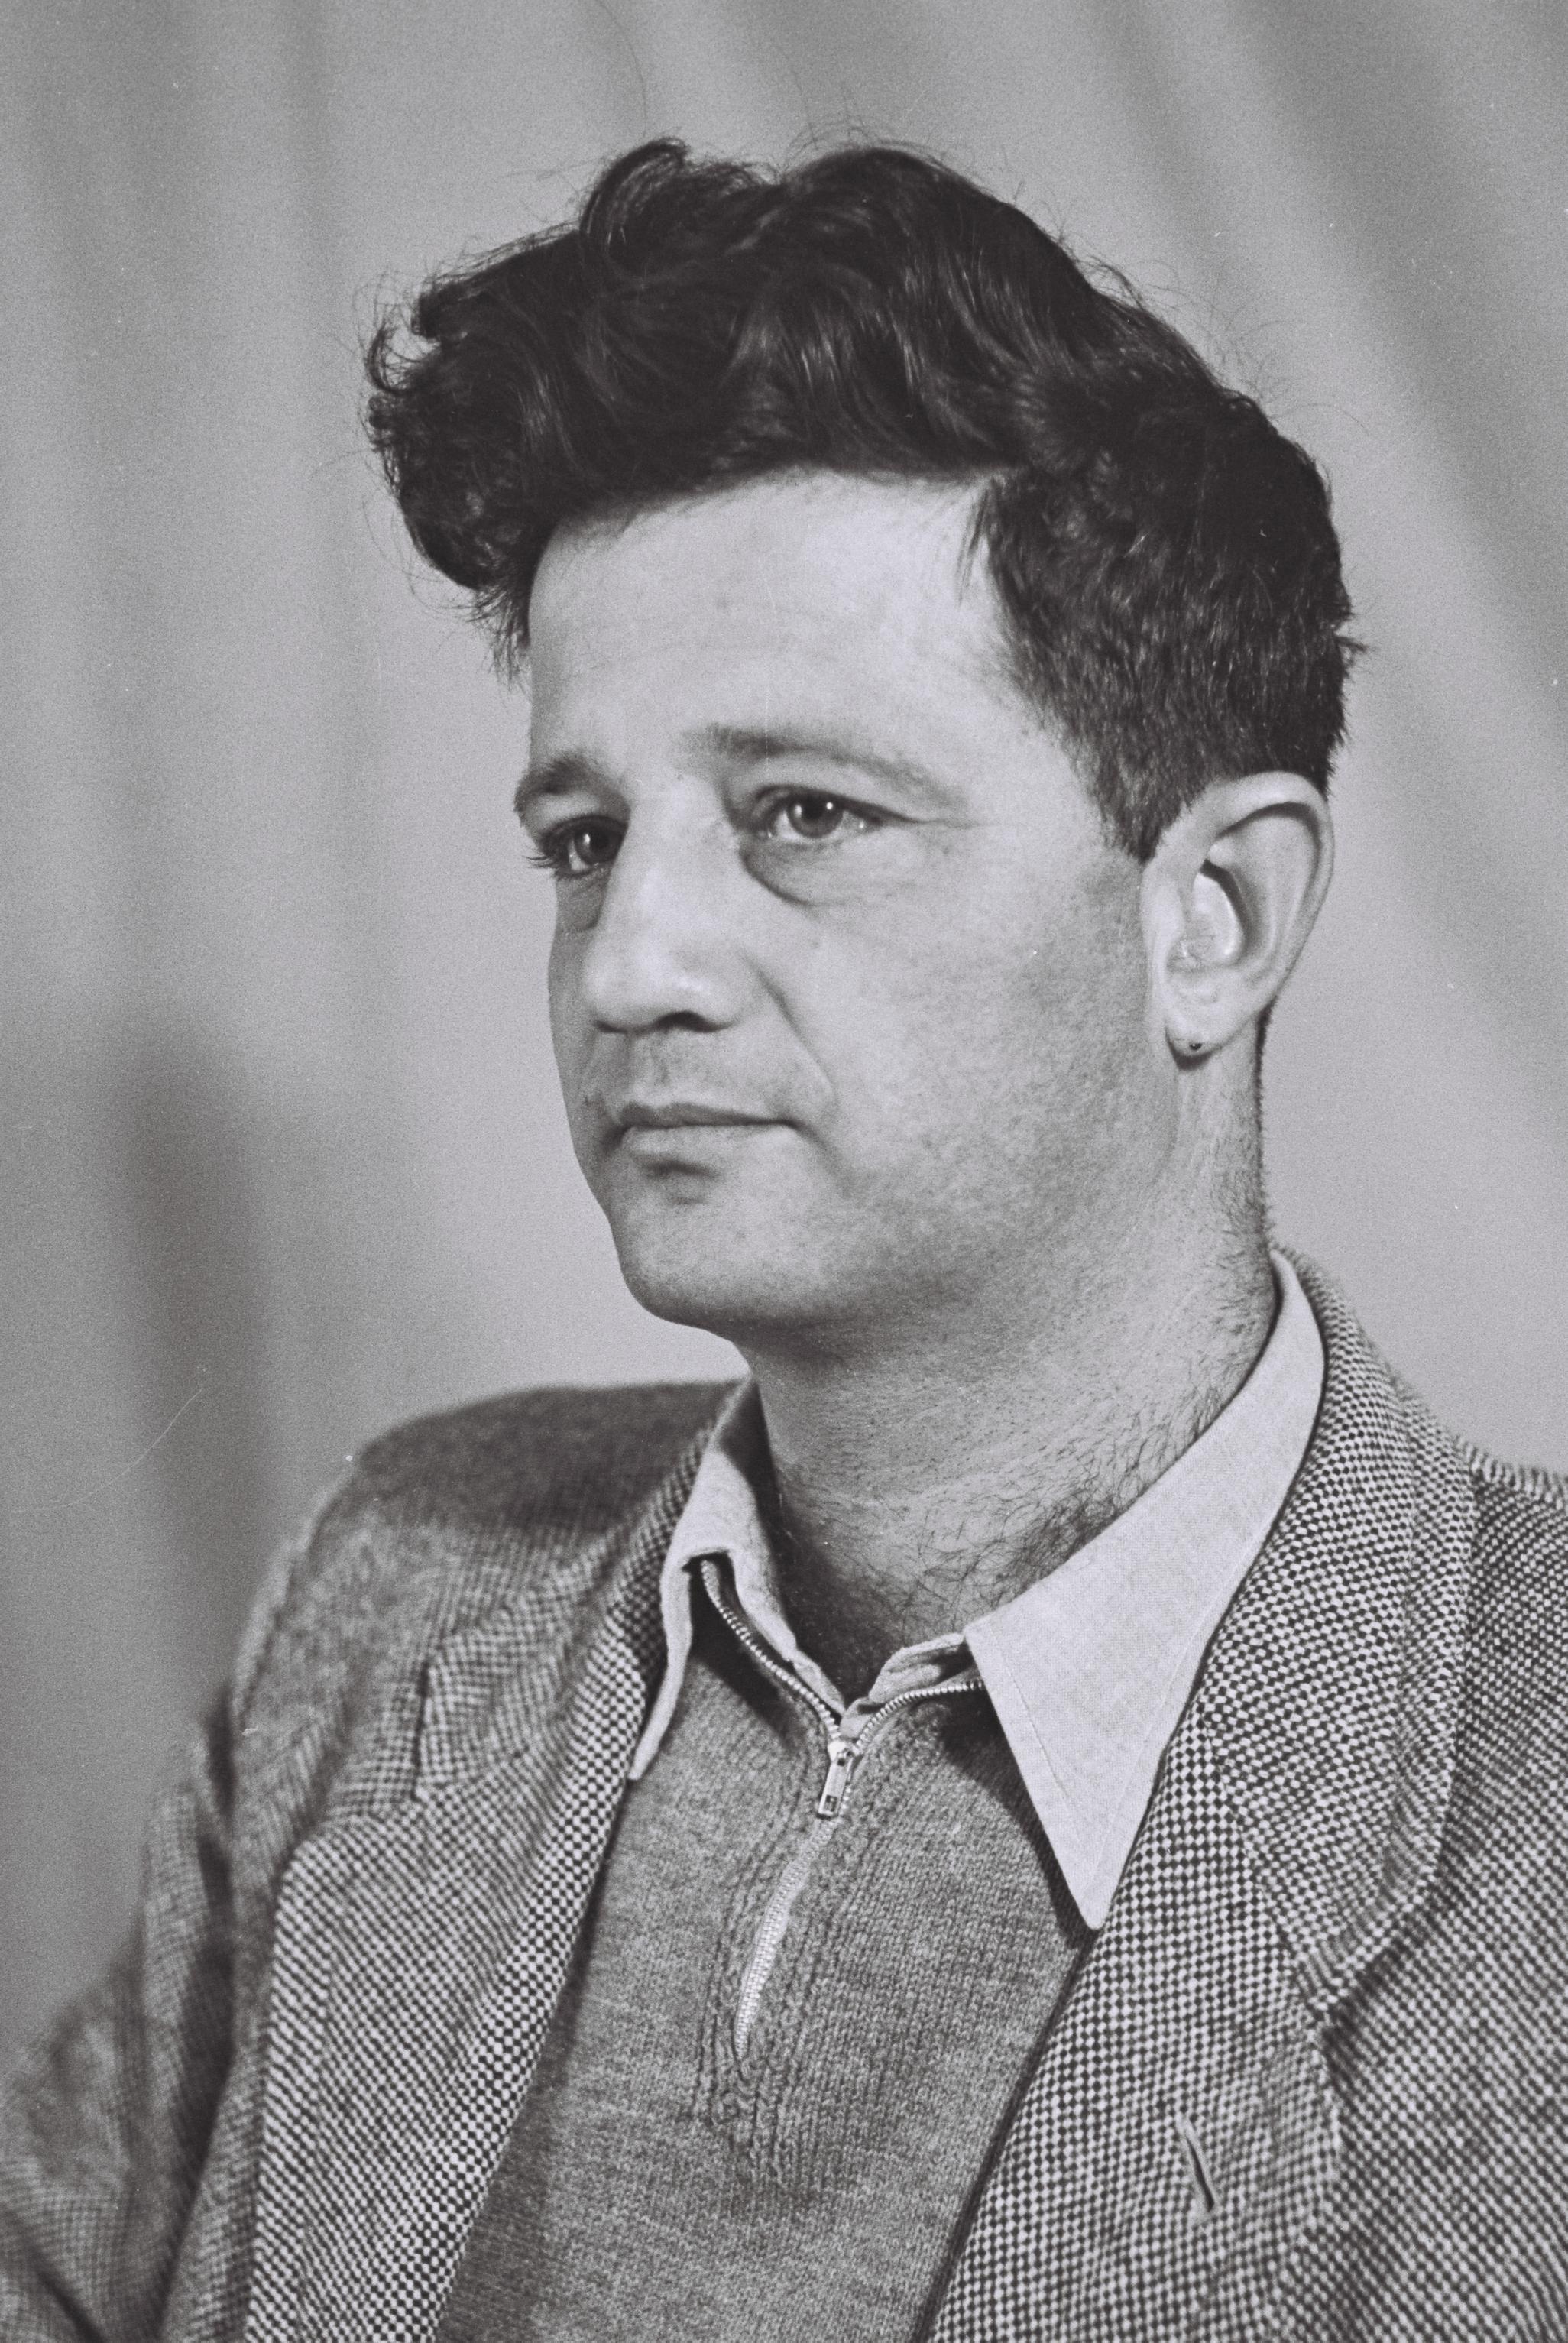 Yizhar in 1951